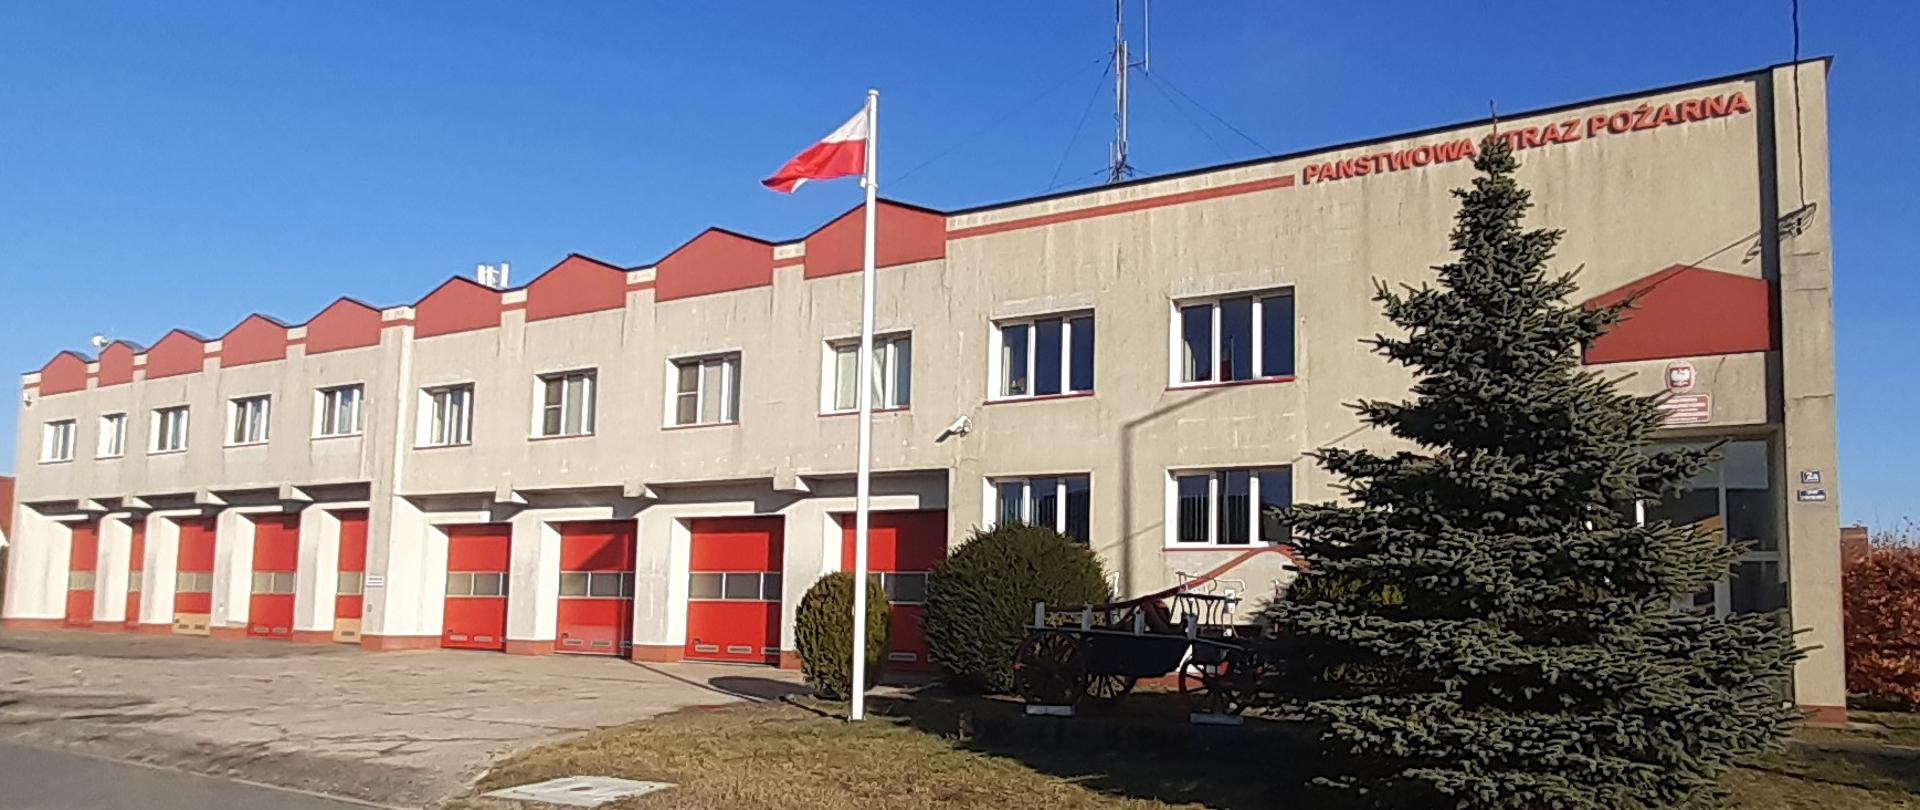 Widok z ulicy budynku komendy powiatowej PSP w Krośnie Odrzańskim.